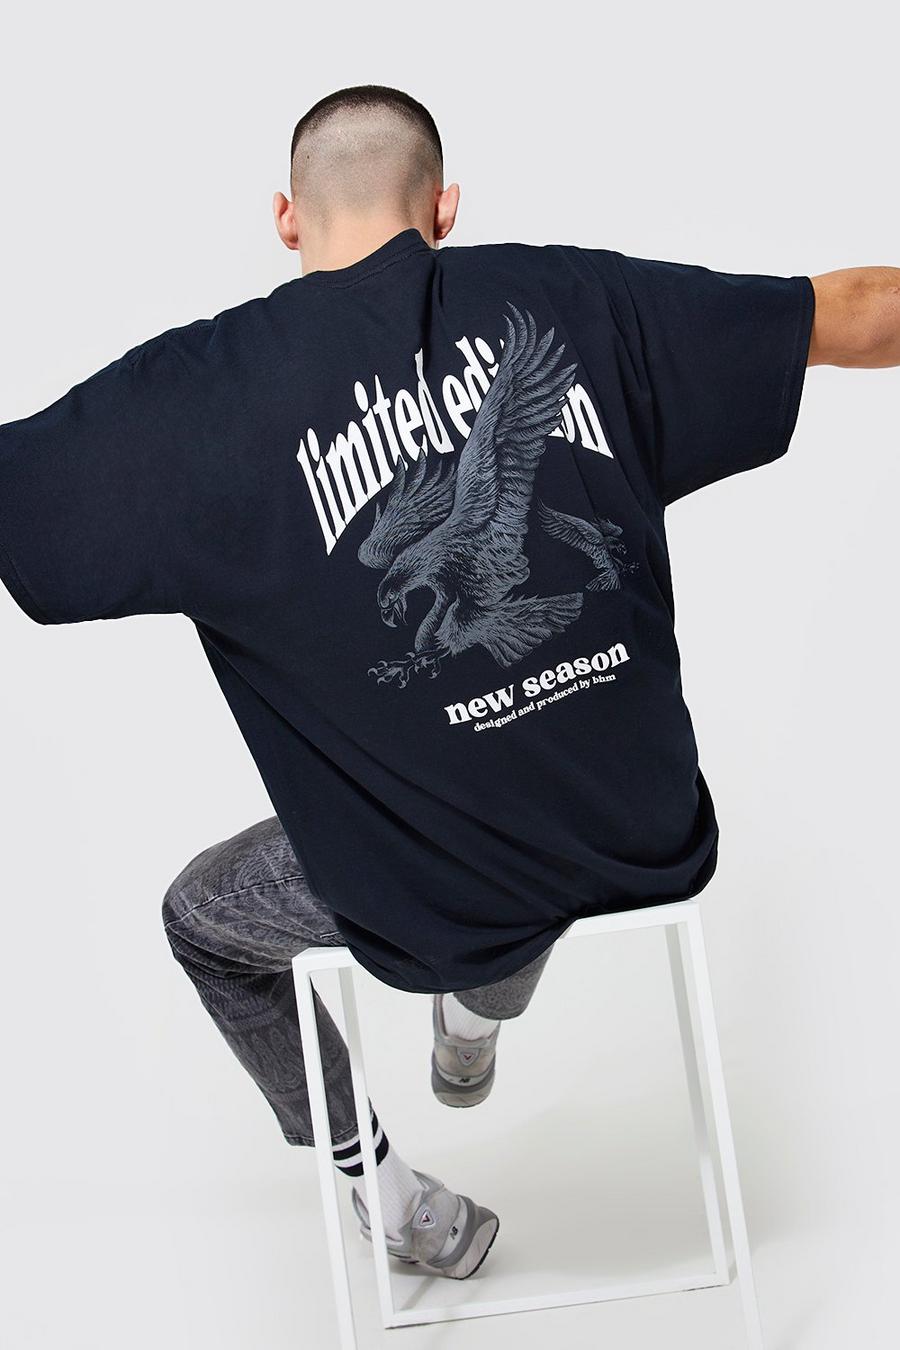 Camiseta oversize con estampado Limited Edition y águila, Black negro